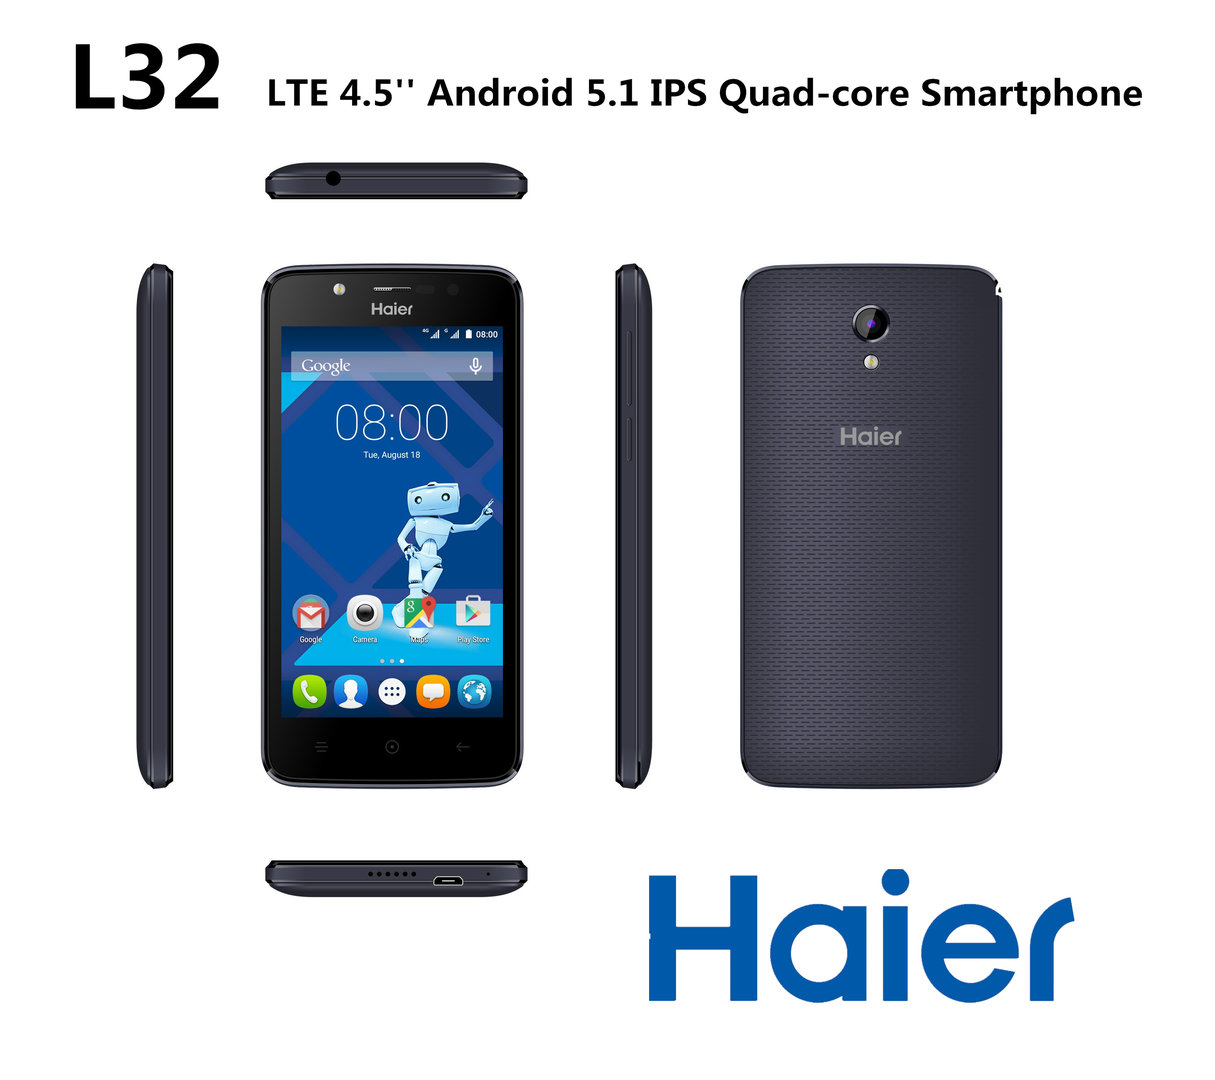 Haier HaierPhone L32